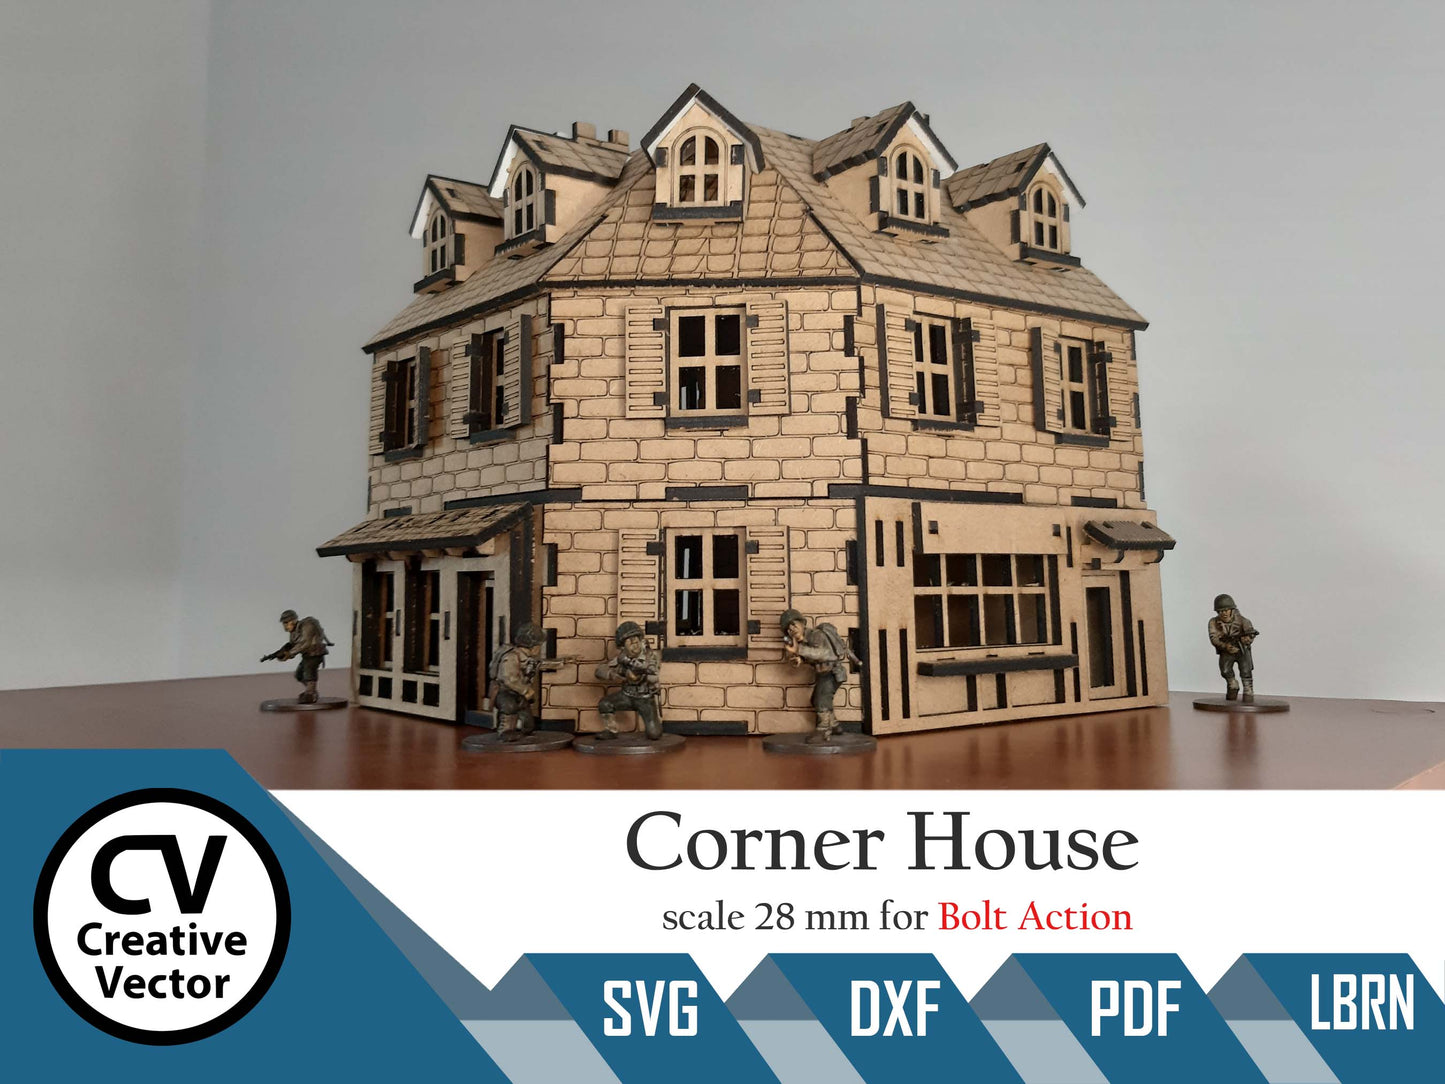 Corner Normandy House im Maßstab 28 mm für das Spiel Bolt Action